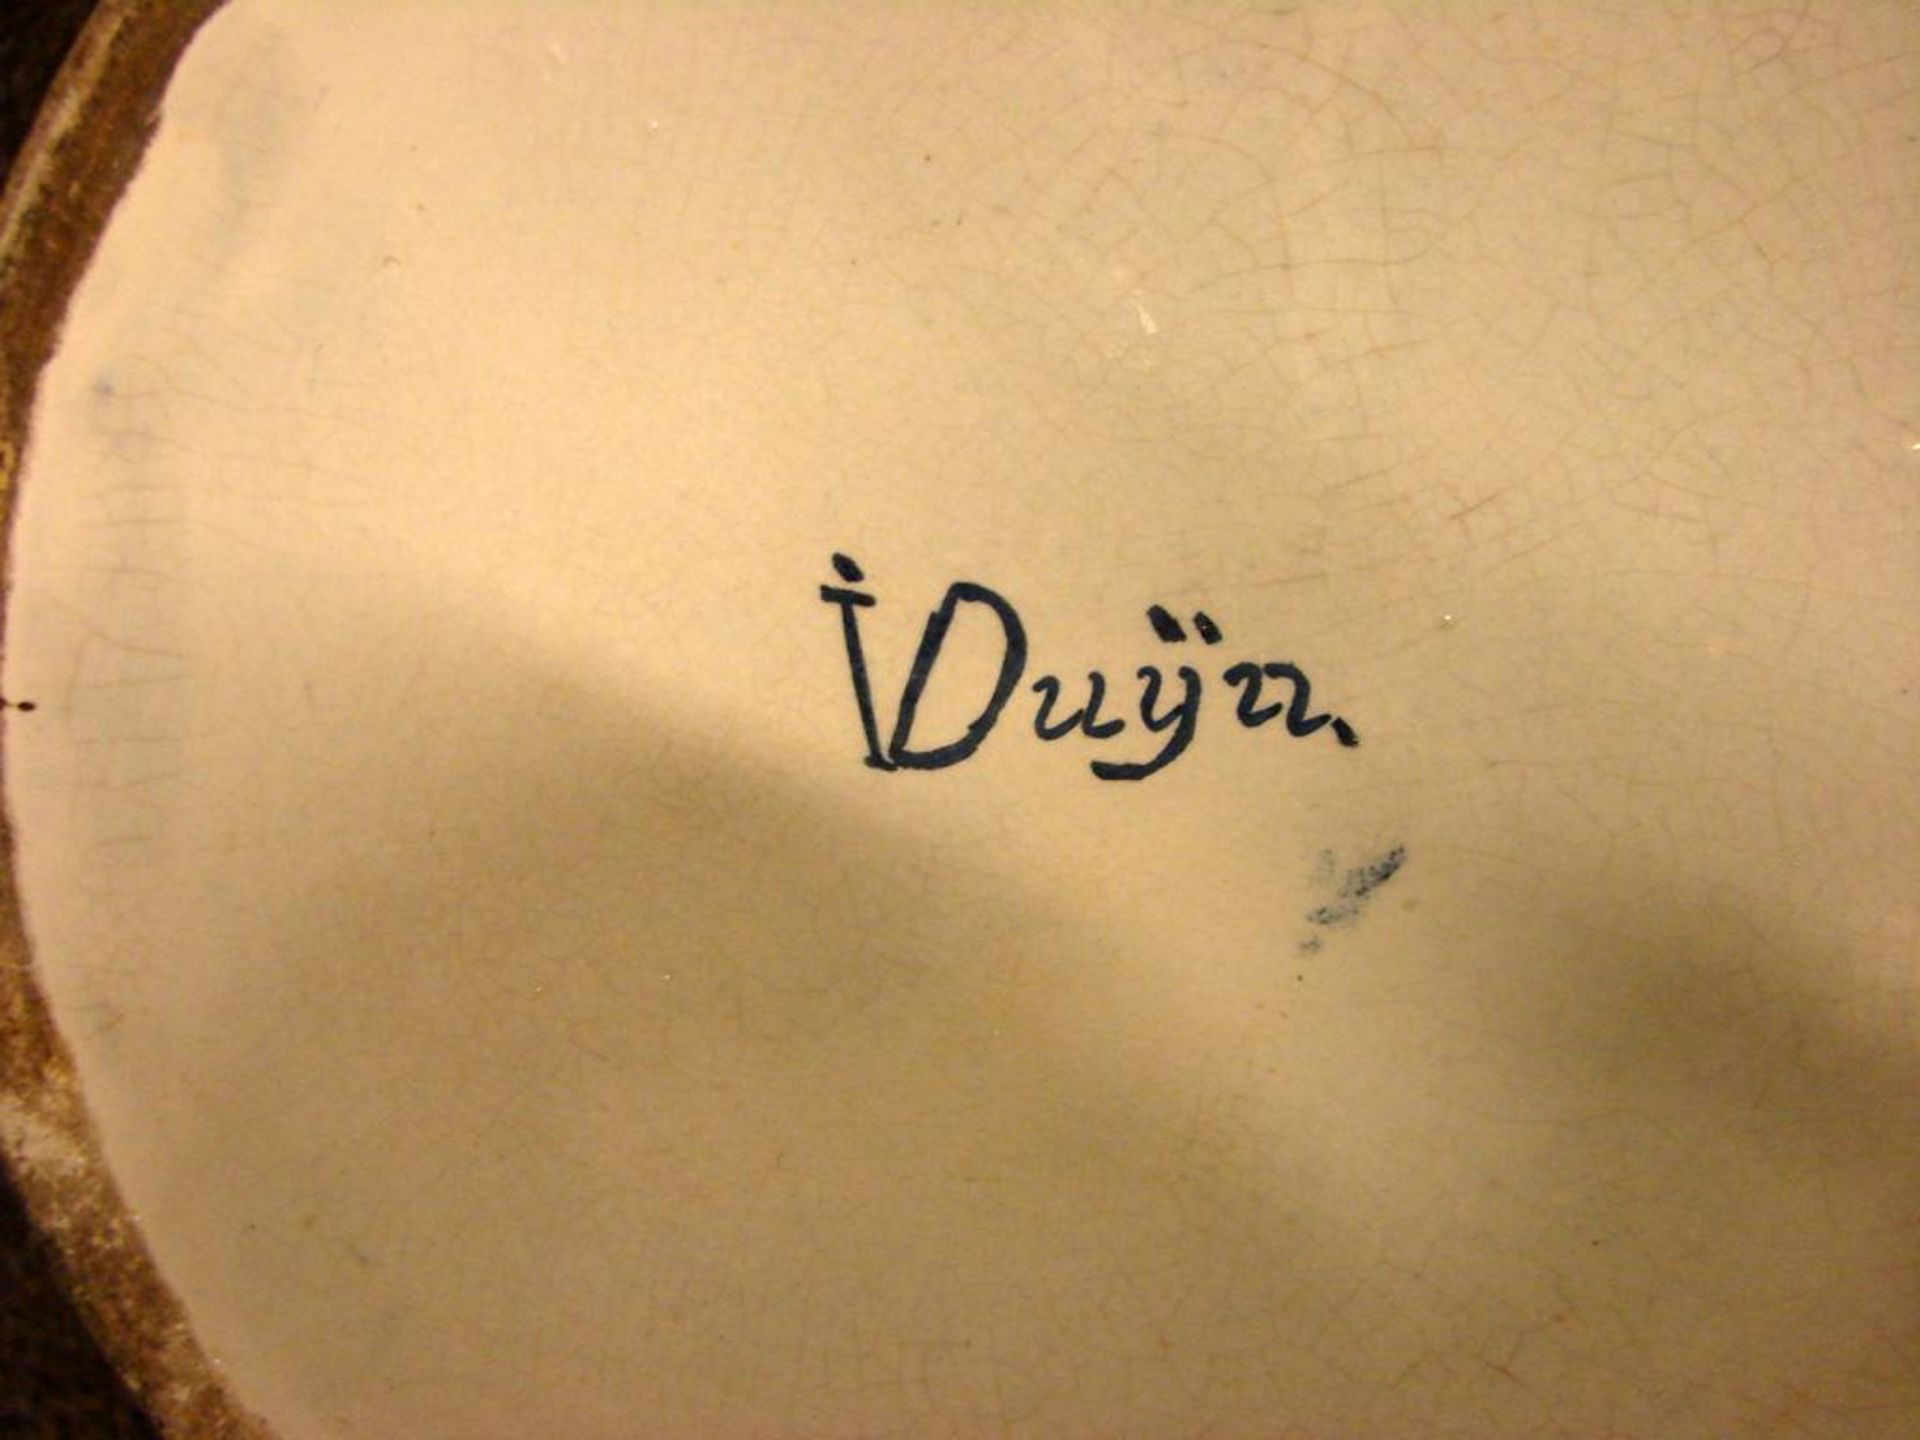 Paar Deckelvasen, bezeichnet I. Duyn, Höhe ca. 40 cm- - -22.00 % buyer's premium on the hammer - Bild 2 aus 2